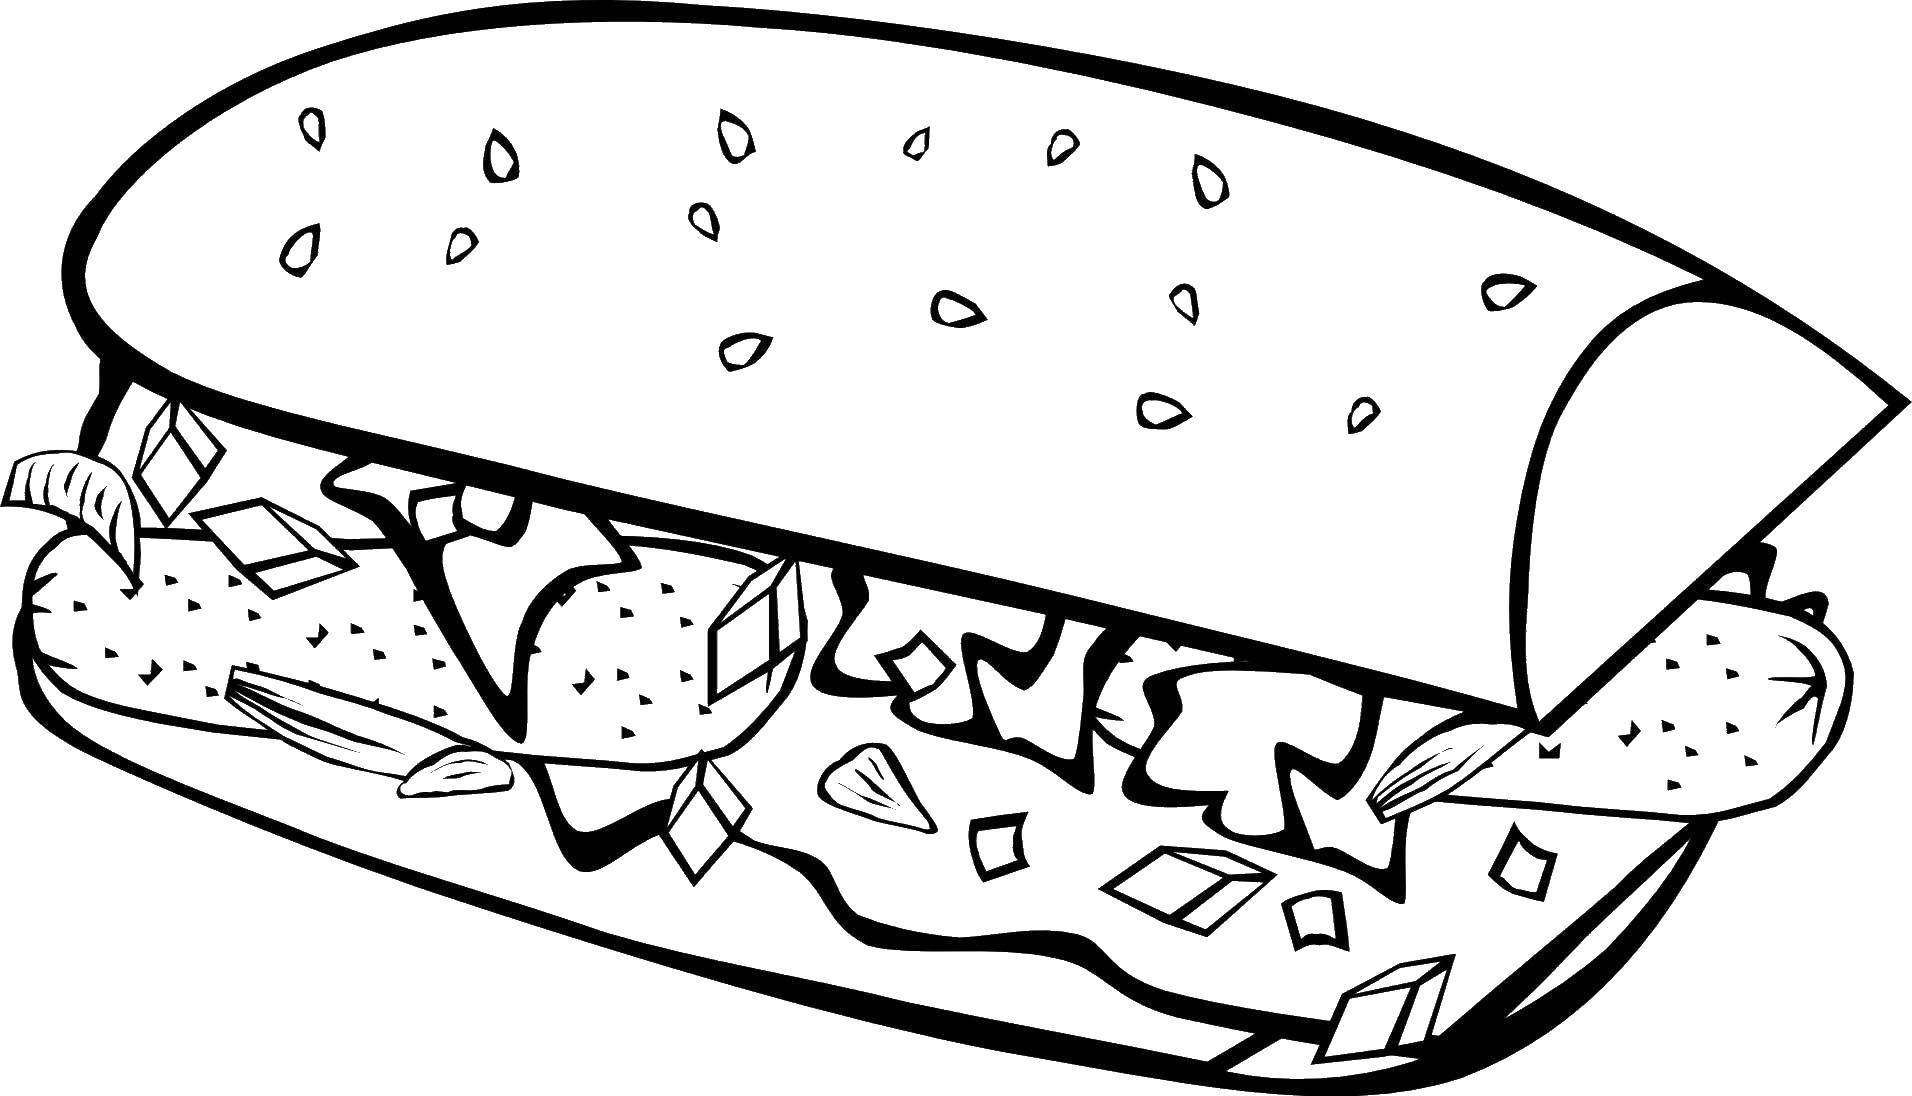 Опис: розмальовки  Сендвіч з сосискою. Категорія: їжа. Теги:  їжа, сендвіч, сосиска.